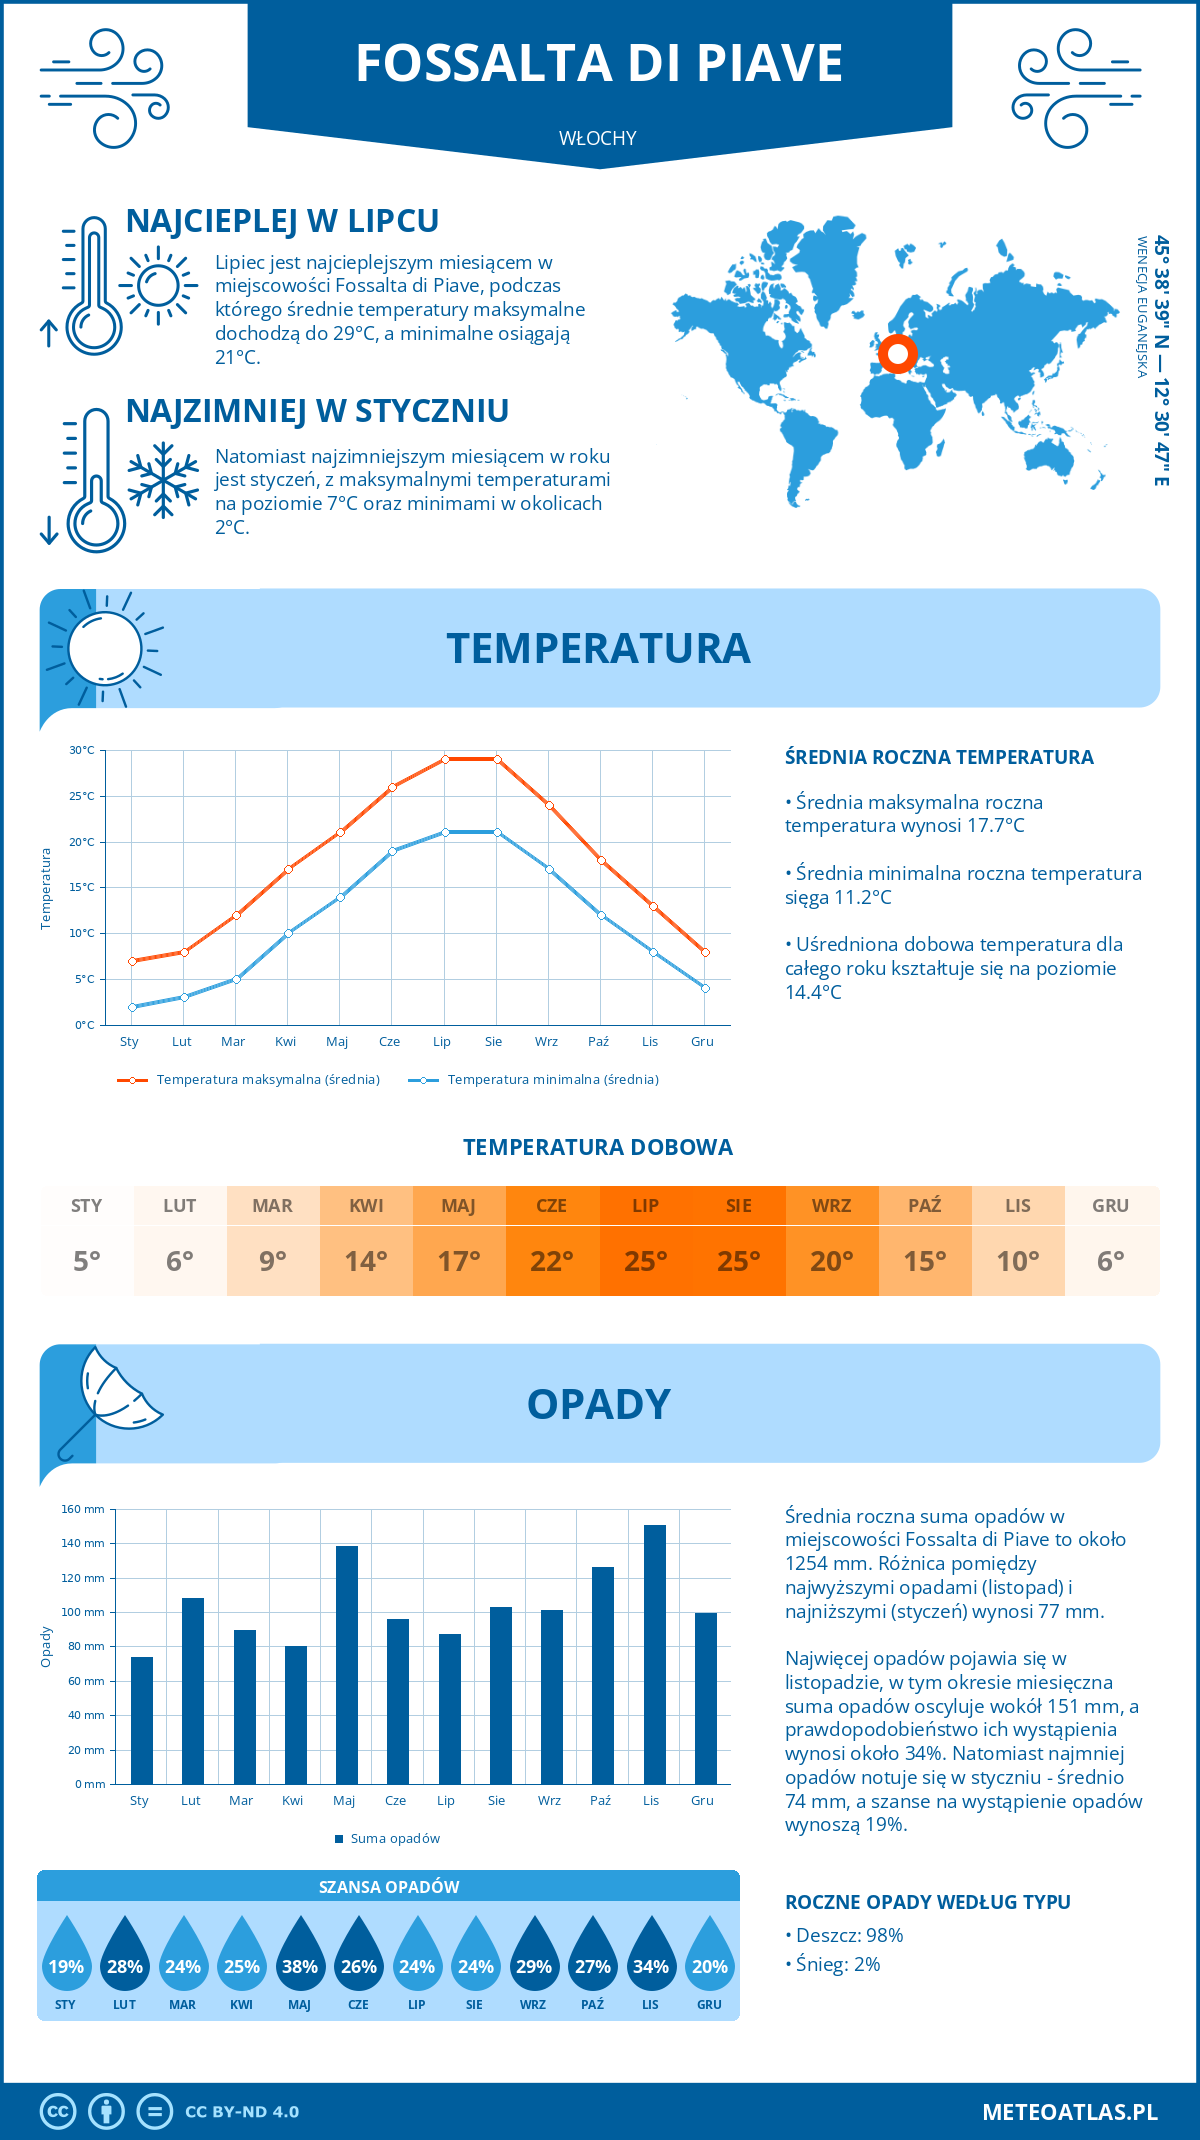 Pogoda Fossalta di Piave (Włochy). Temperatura oraz opady.